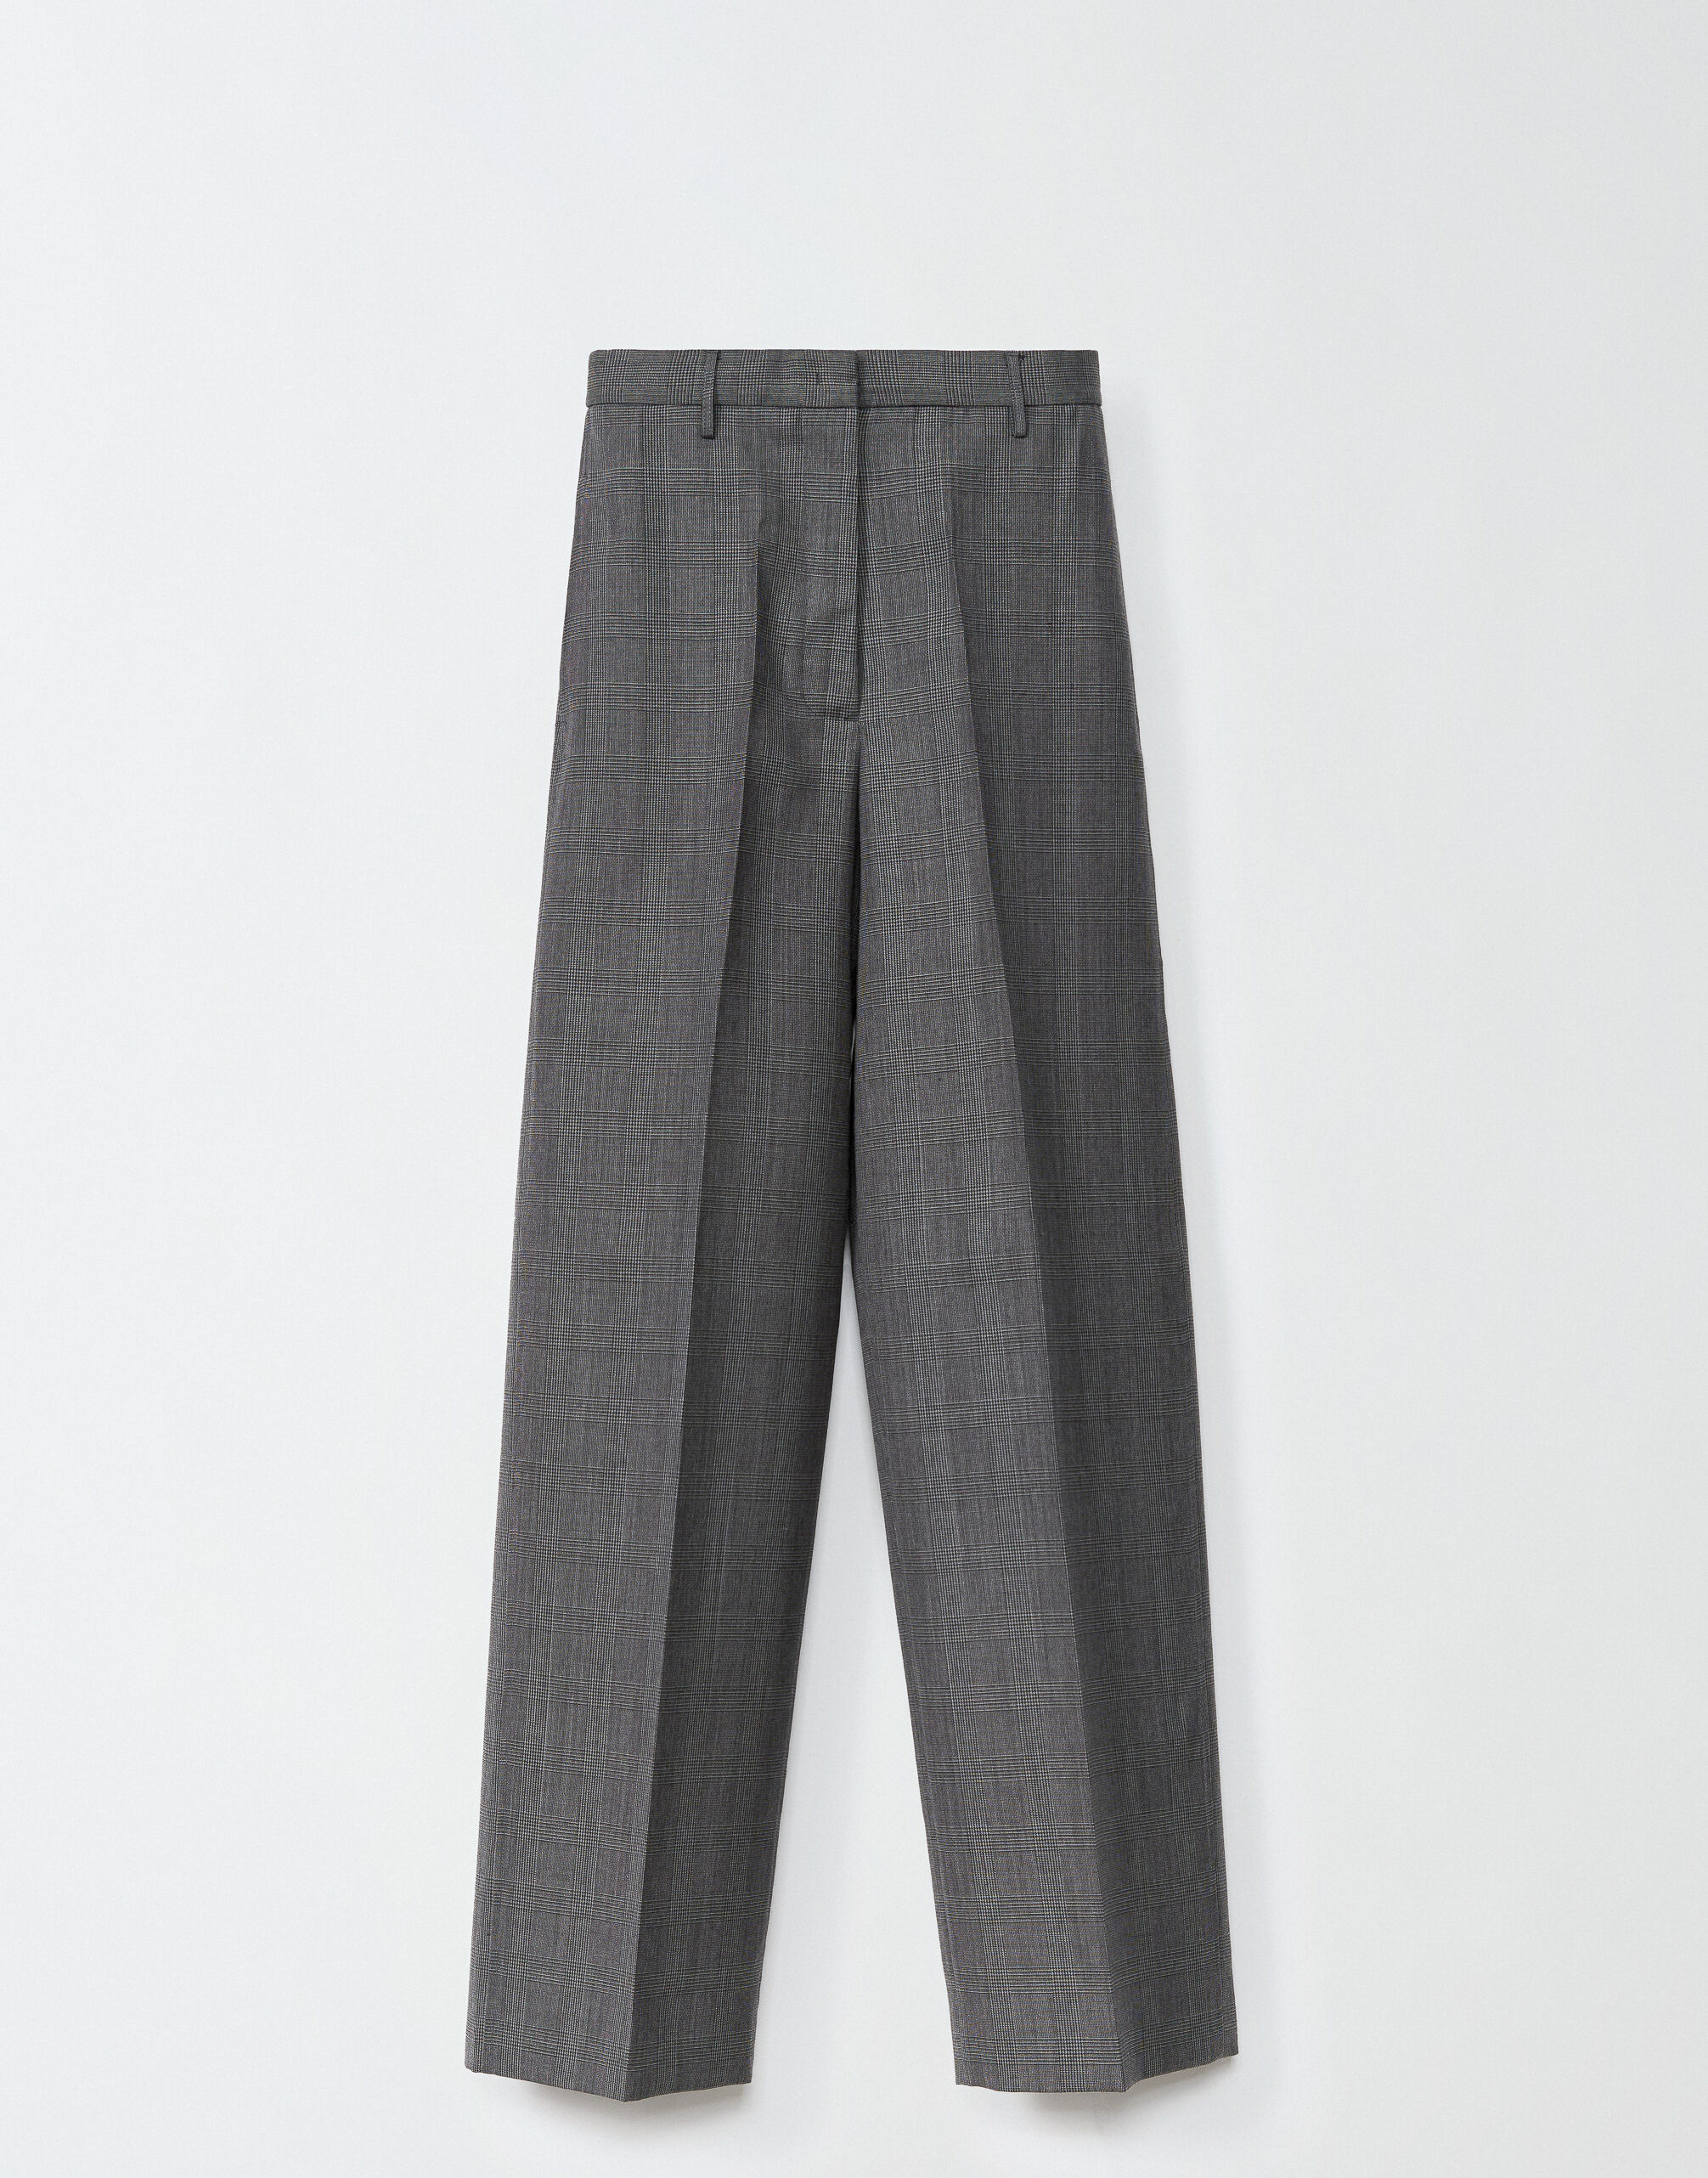 ${brand} Pantalone Norcia in principe di Galles, grigio scuro e nero ${colorDescription} ${masterID}